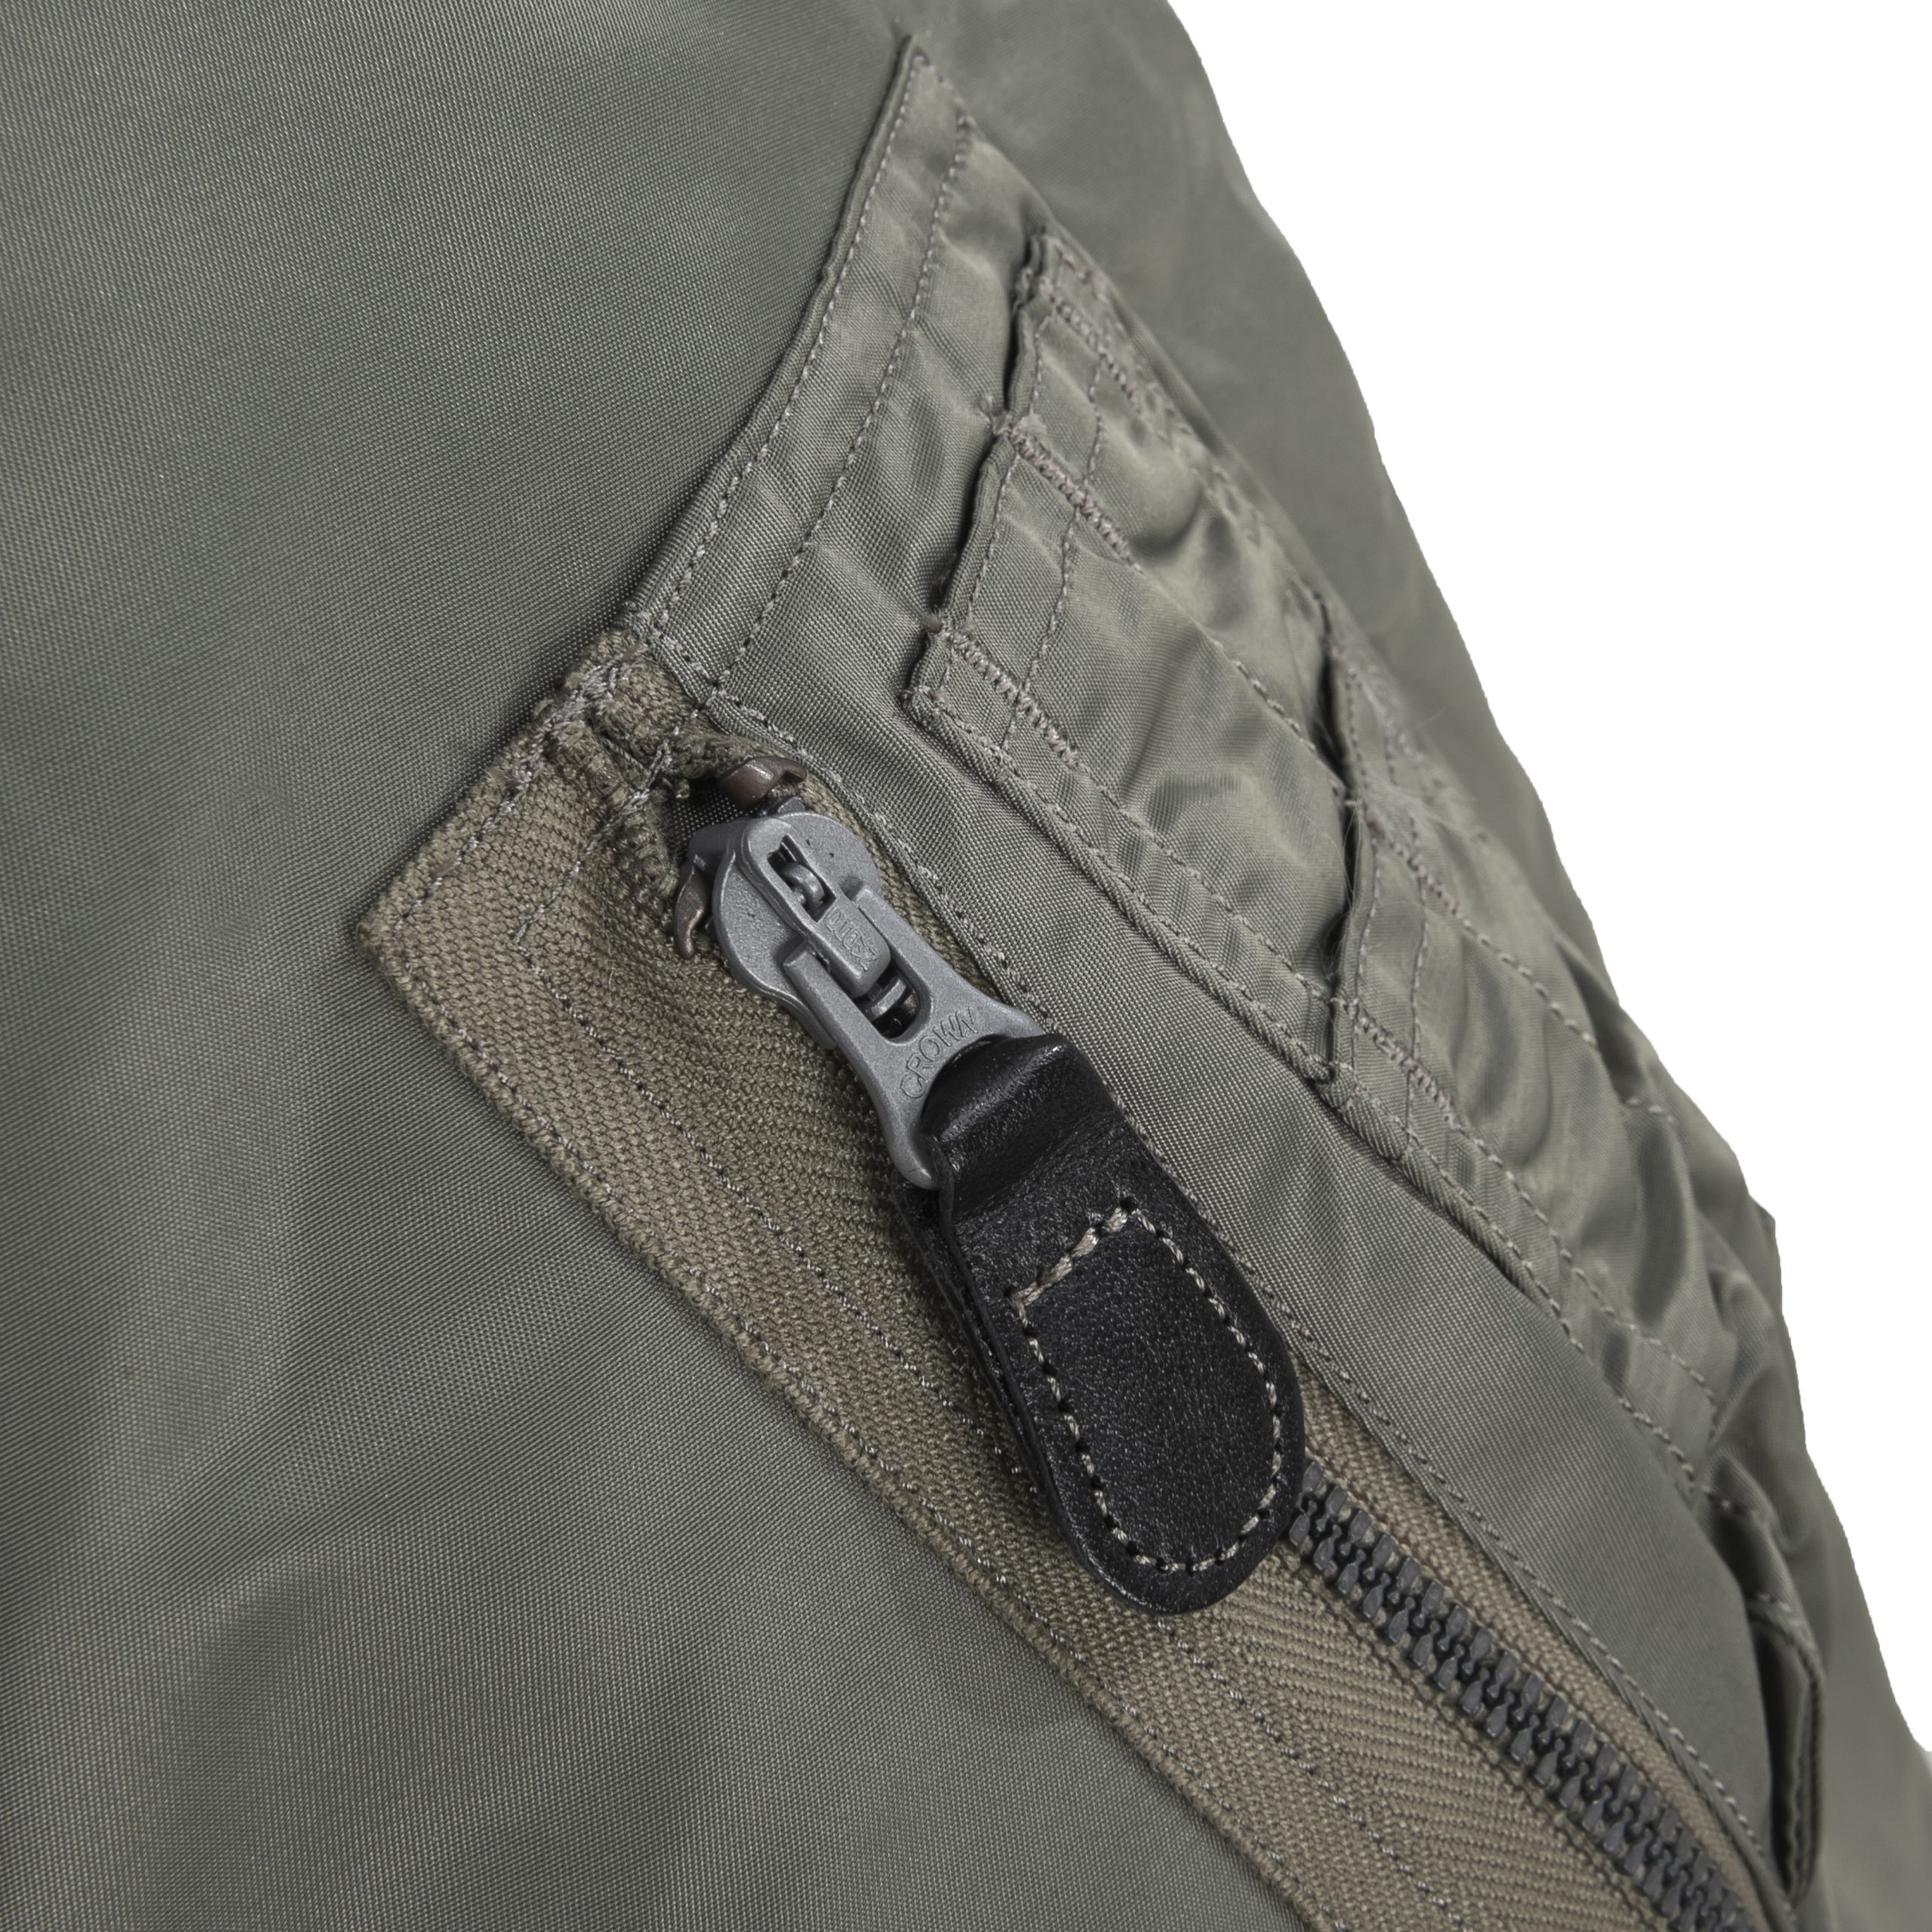 MA-1 Slender Jacket Original Specs. Olive BR14920 – B74